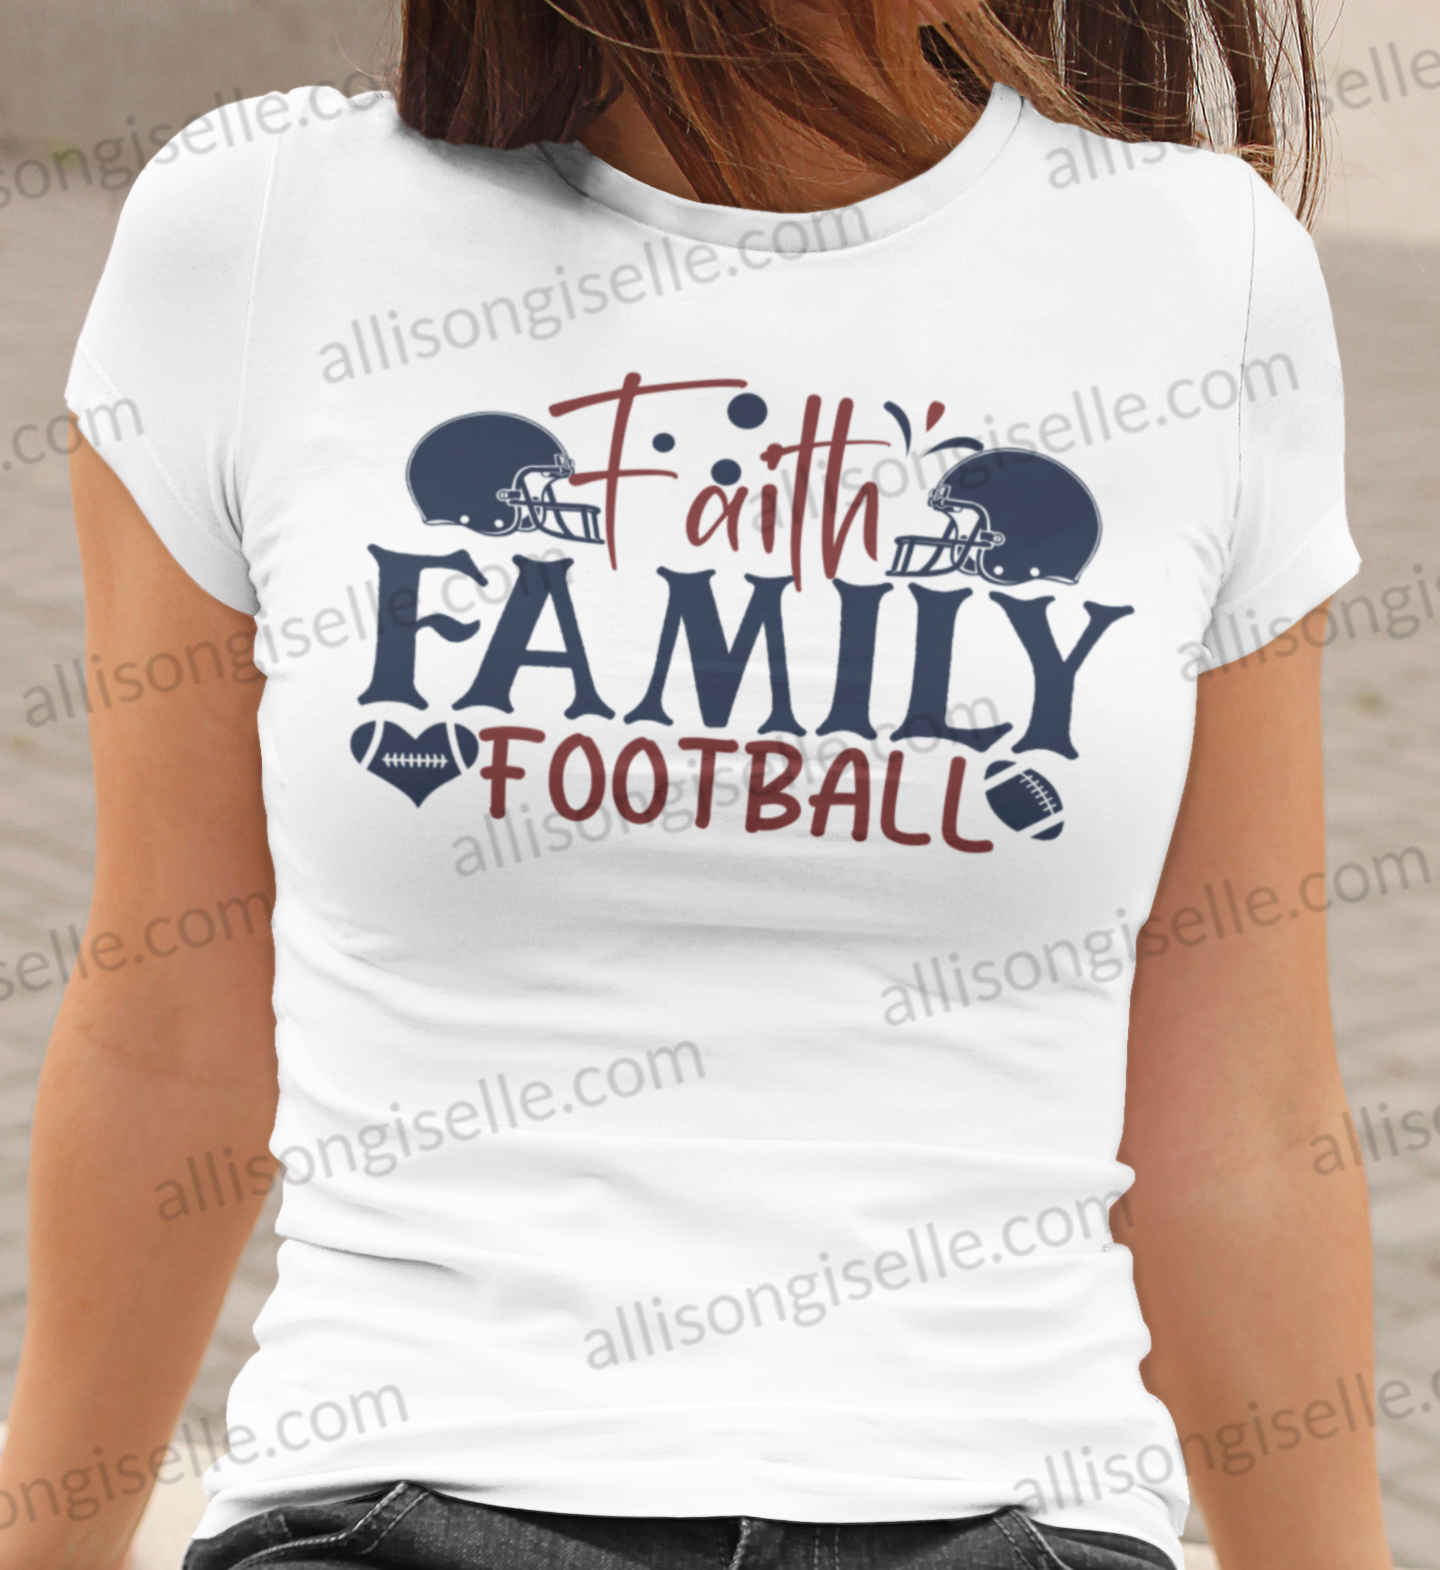 Faith Family Football Shirt, Football Shirt, Football Shirt Women, Crew Neck Women Shirt, Football t shirt, Football t shirt Women